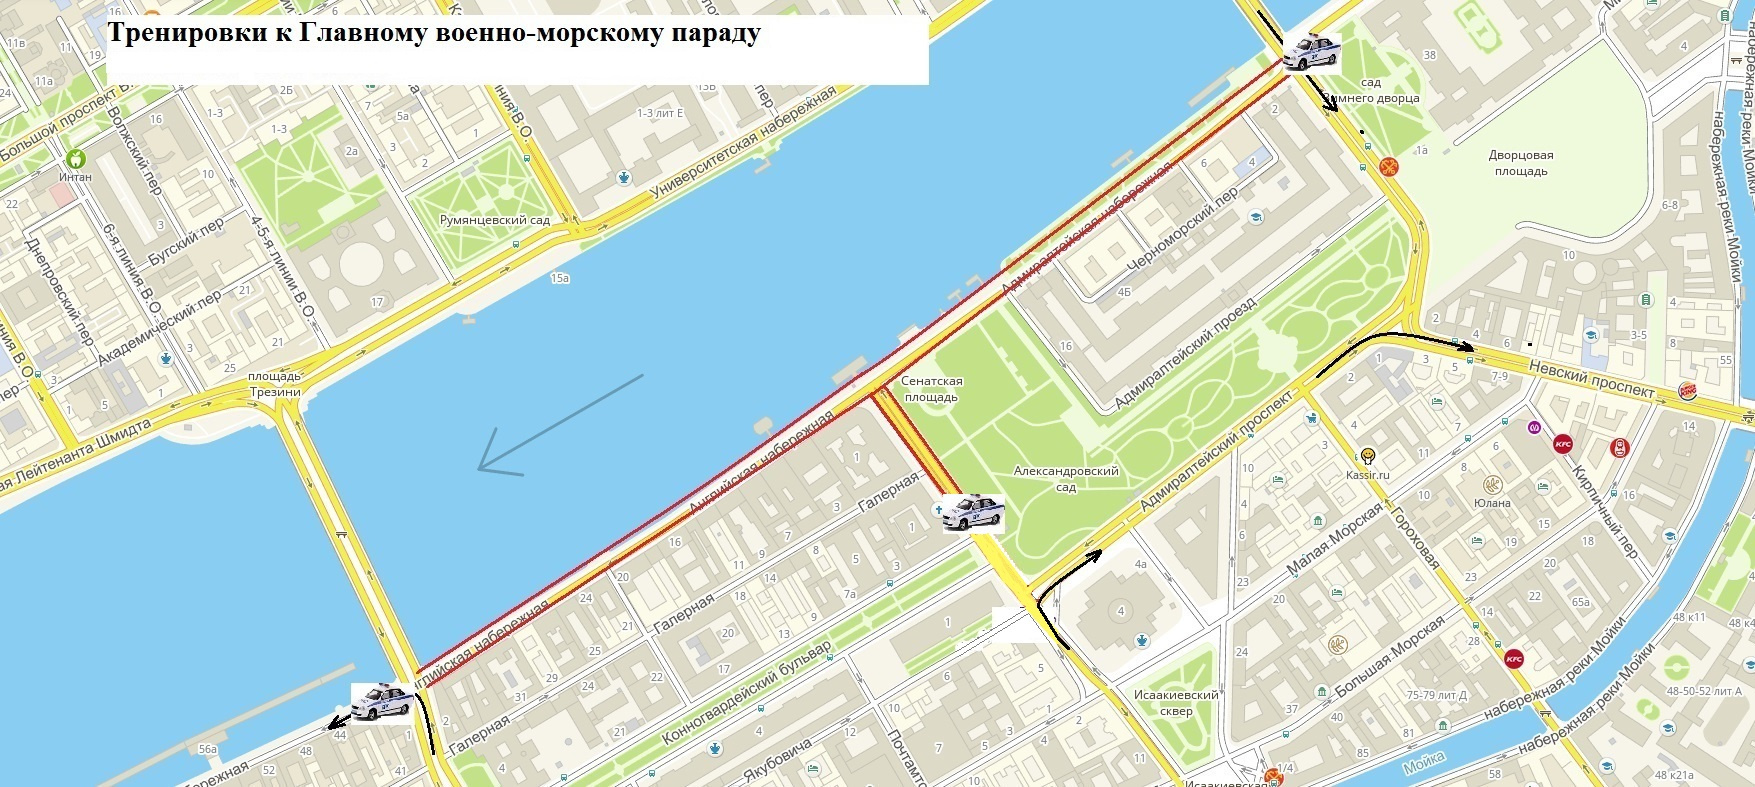 Мосты в Петербурге из-за подготовки к главному военно-морскому параду разведут до утра